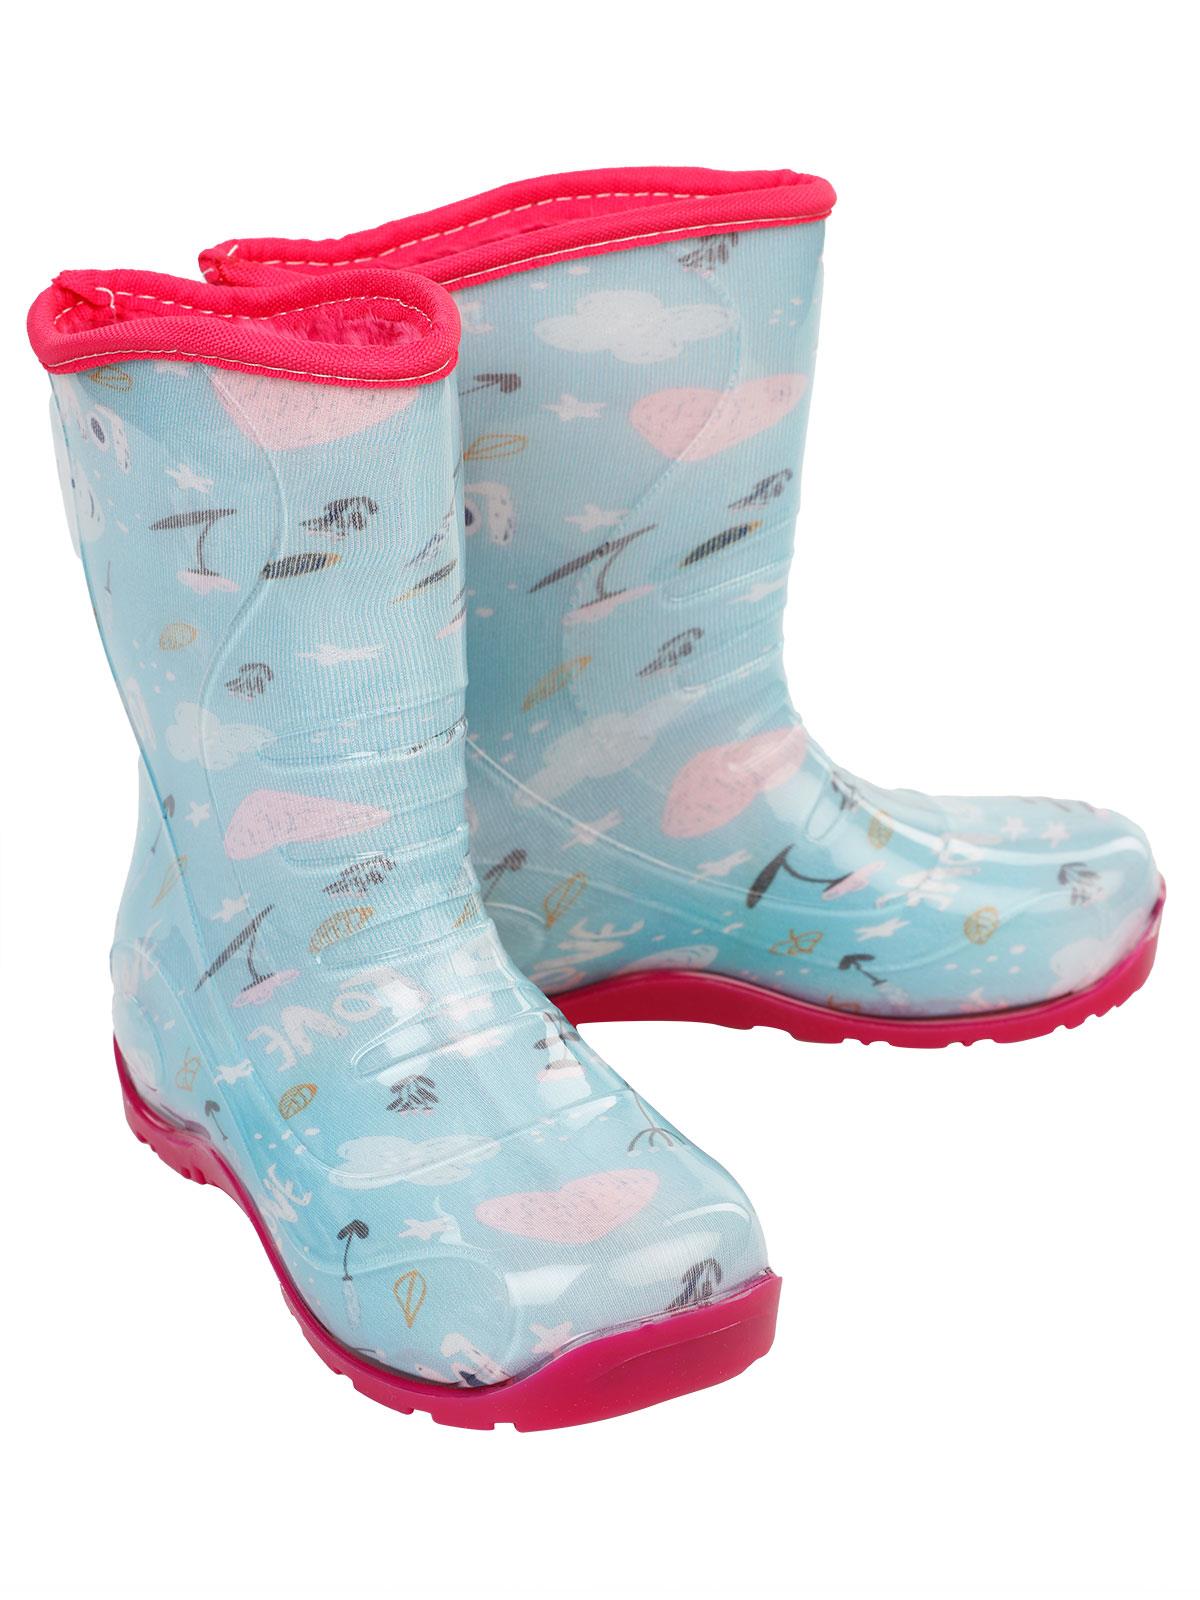 Boots Kız Çocuk Love Baskılı Yağmur Çizmesi 30-34 Numara Mint Yeşili